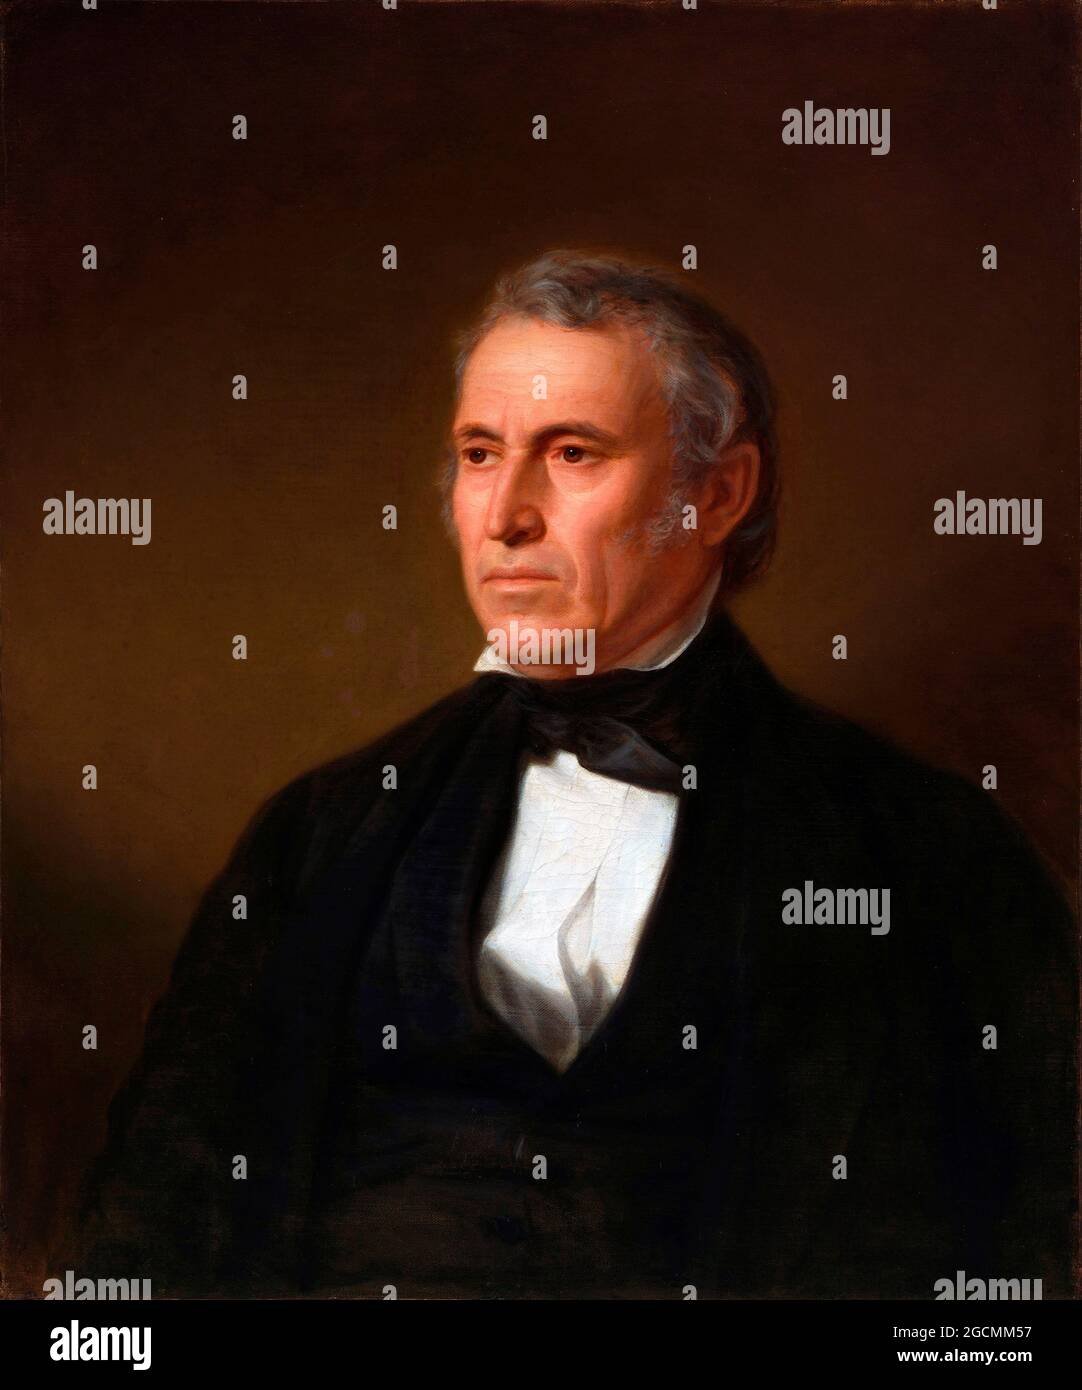 Zachary Taylor. Porträt des 12. US-Präsidenten Zachary Taylor (1784-1850) von John Vanderlyn, Öl auf Leinwand, c.. 1850-52 Stockfoto